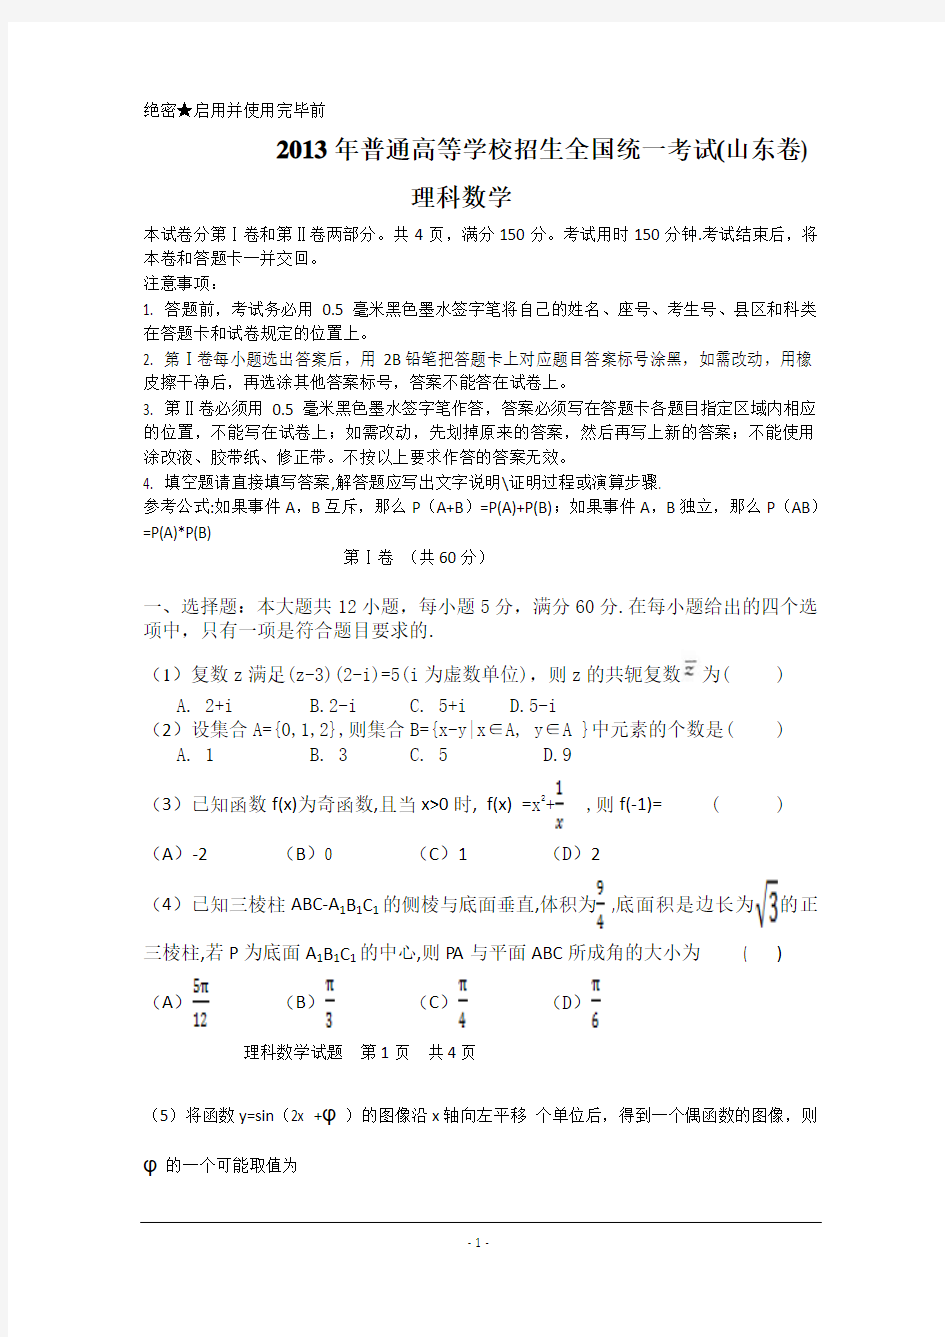 2013年高考真题——理科数学(山东卷)